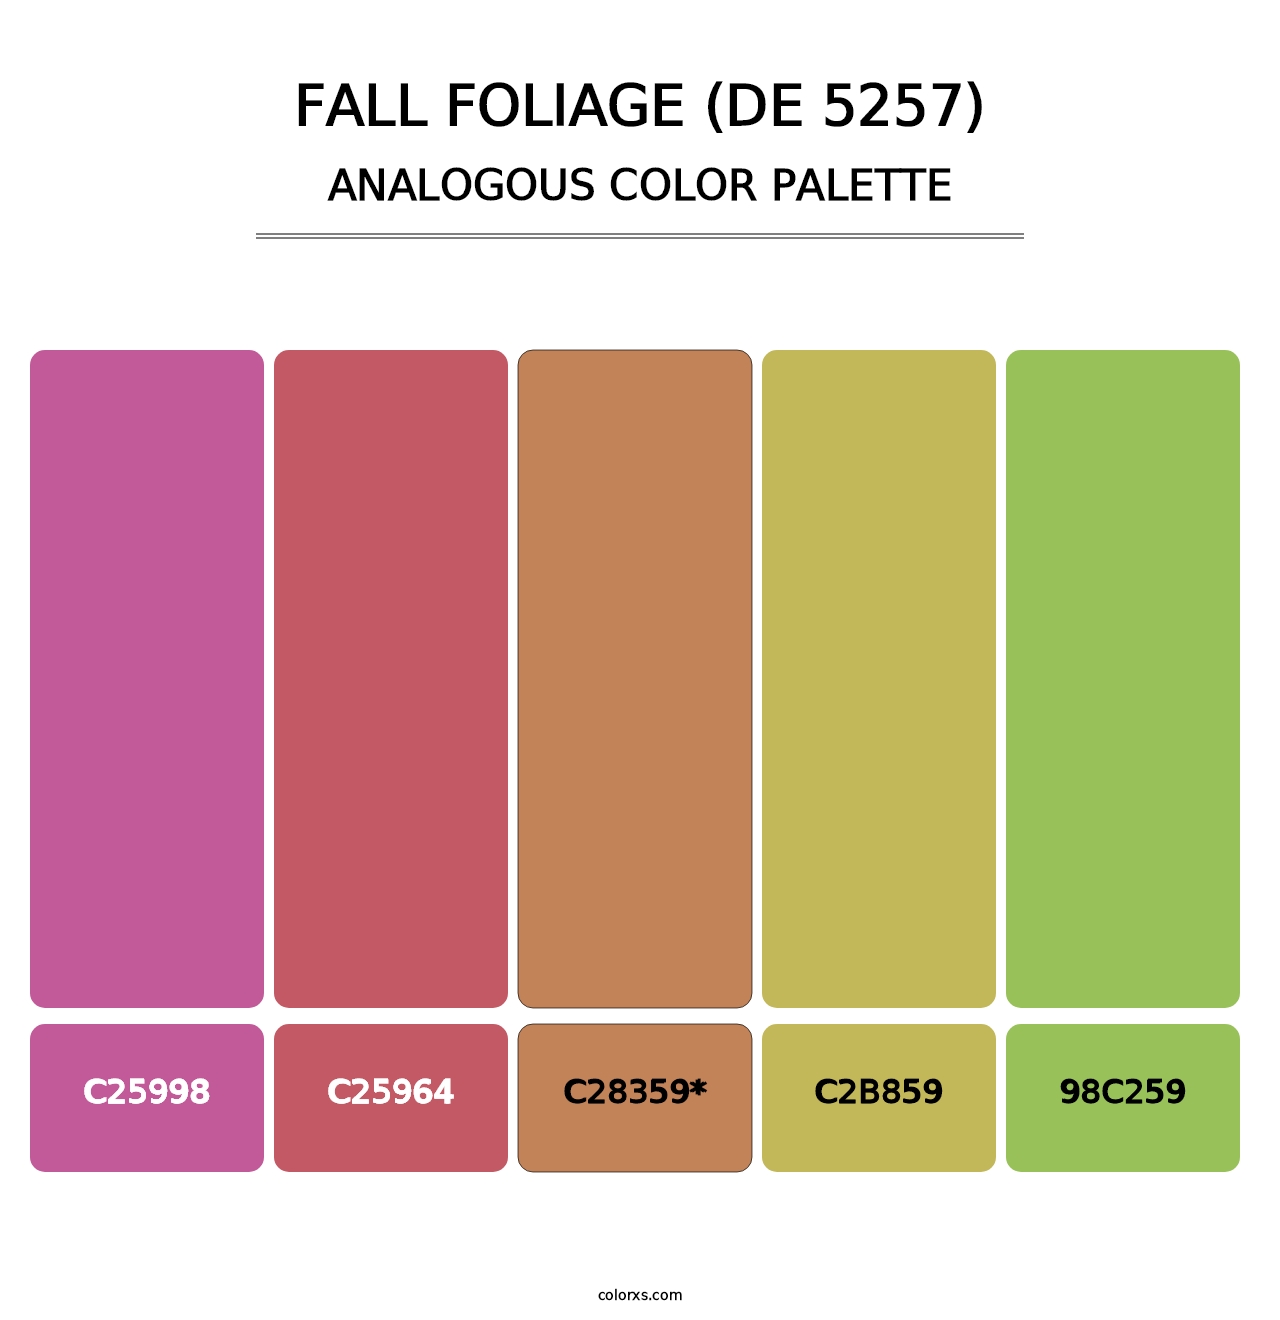 Fall Foliage (DE 5257) - Analogous Color Palette